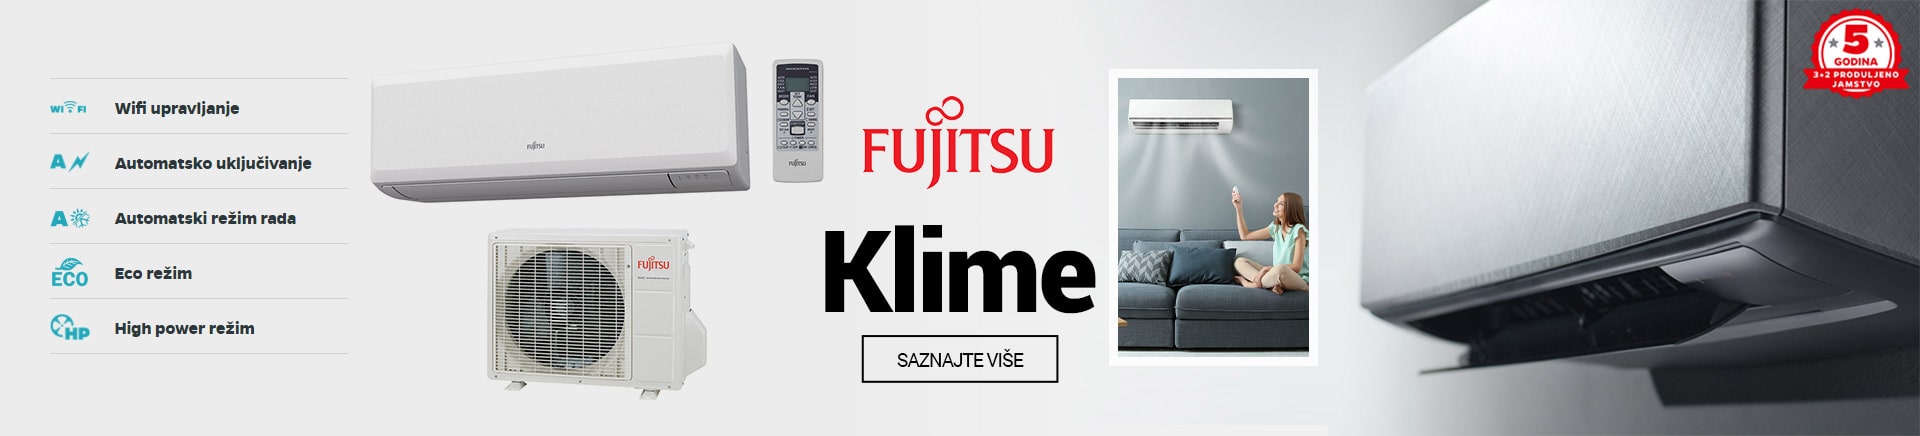 Fujitsu klime